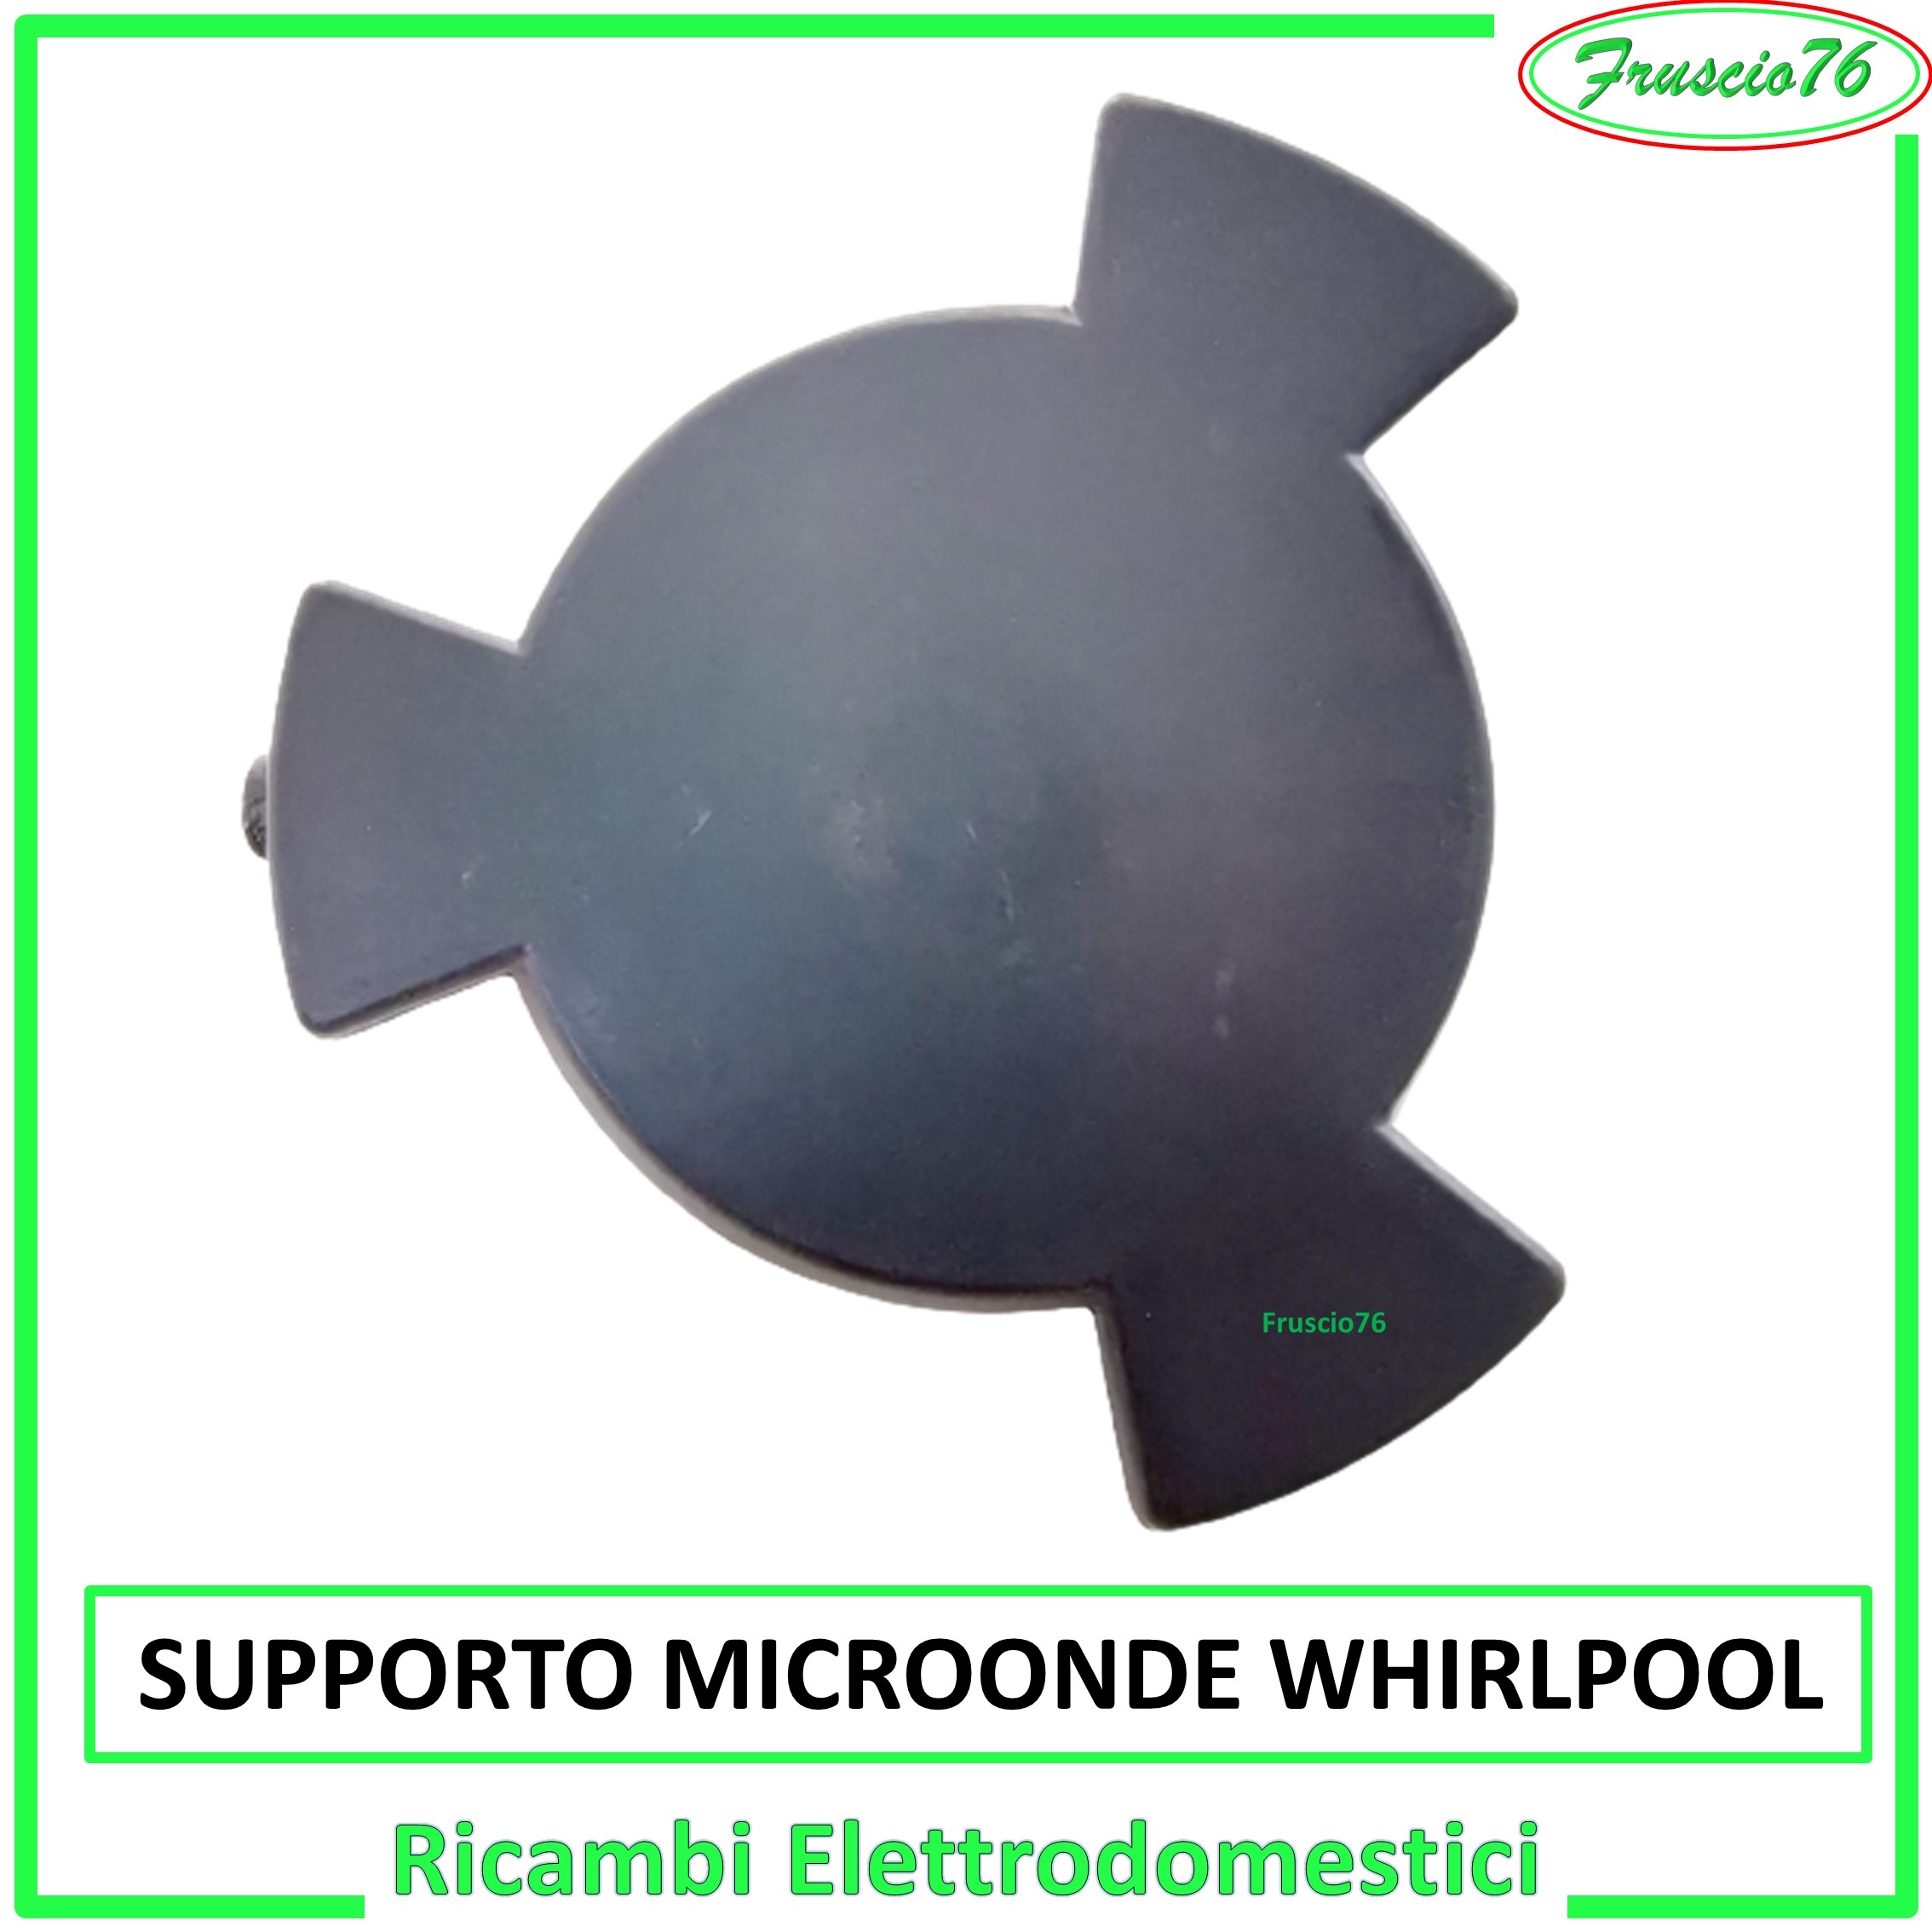 Supporto per Piatto Forno a Microonde Whirlpool Ricambi Grigio H20 481246238161